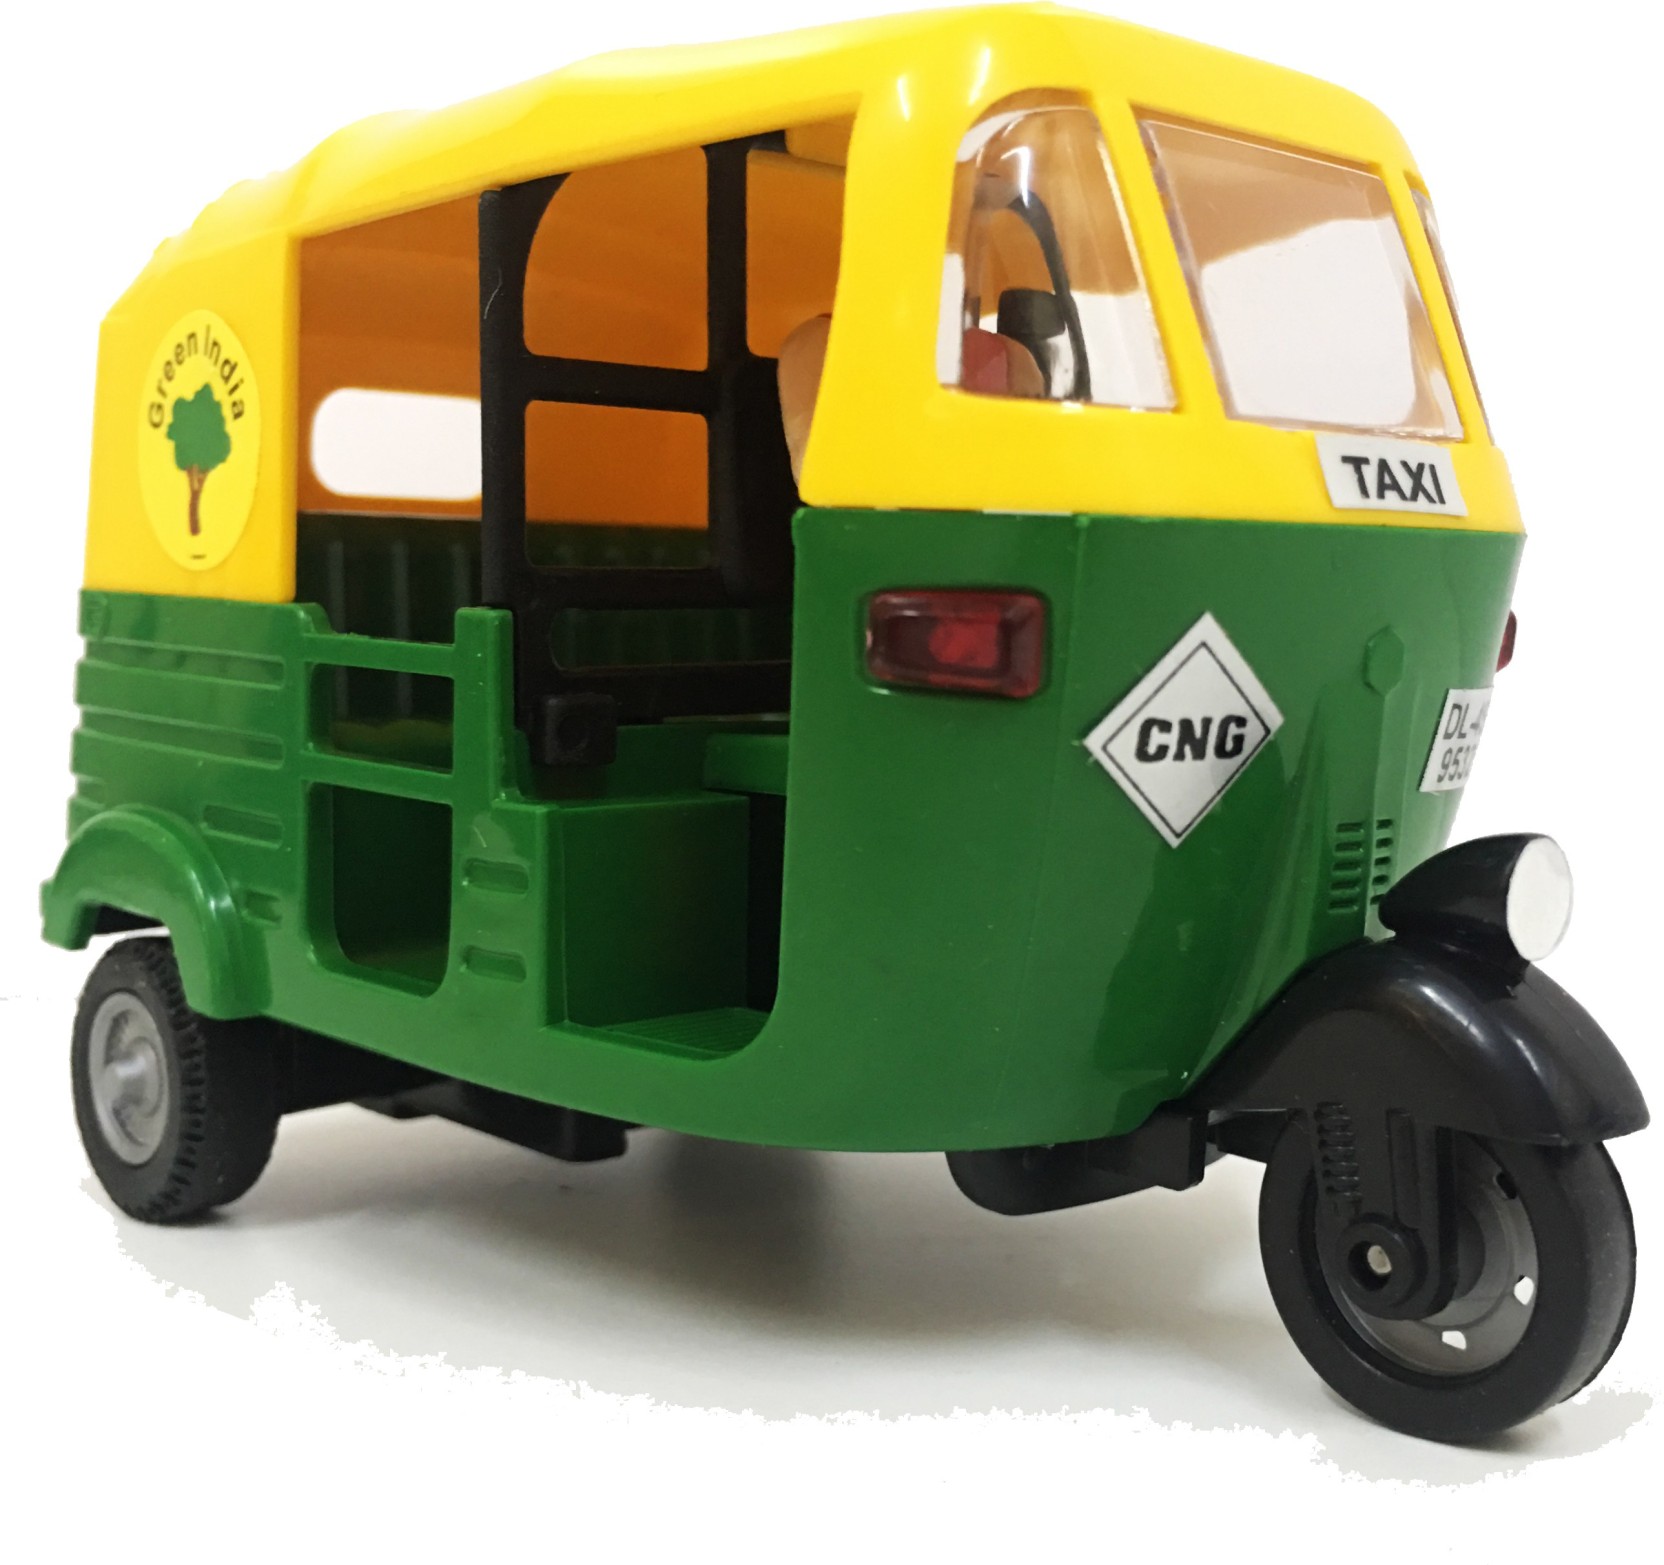 Jack Royal CNG Auto Rickshaw Green CNG Auto Rickshaw Green . Buy CNG